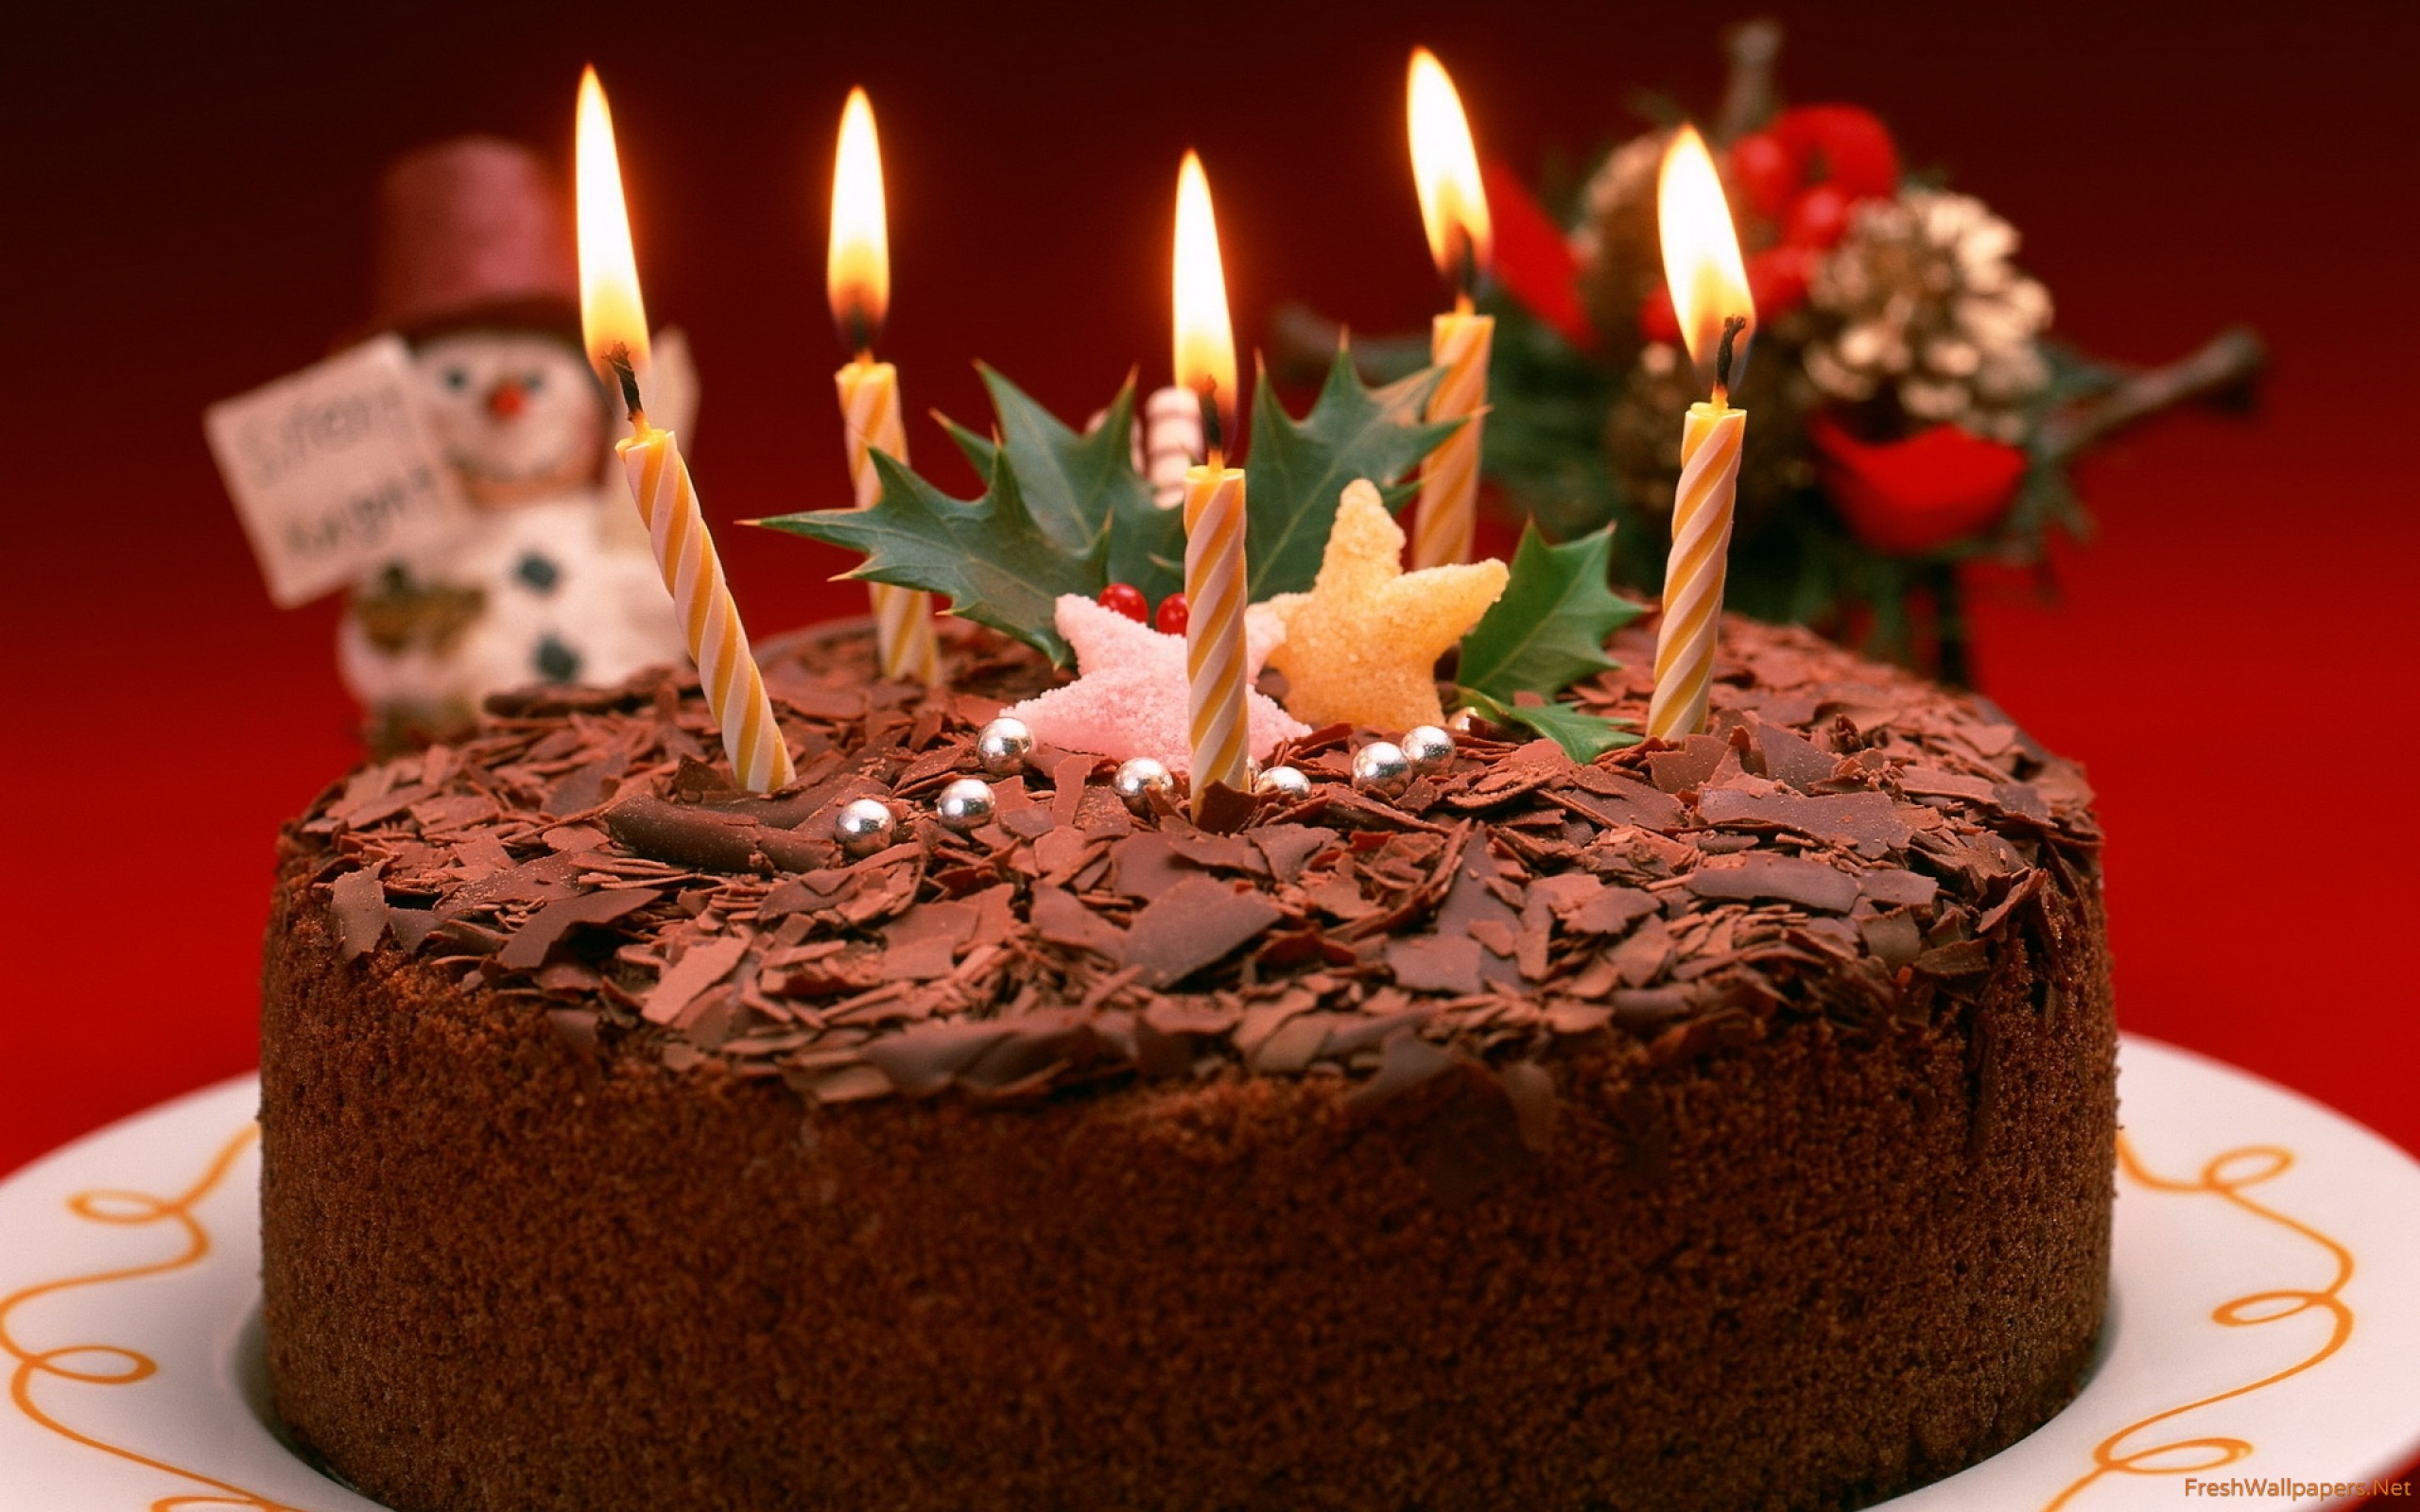 День рождения 26 февраля. Торт с днем рождения!. Свечи для торта. Красивый торт со свечами. Открытка с днём рождения торт.